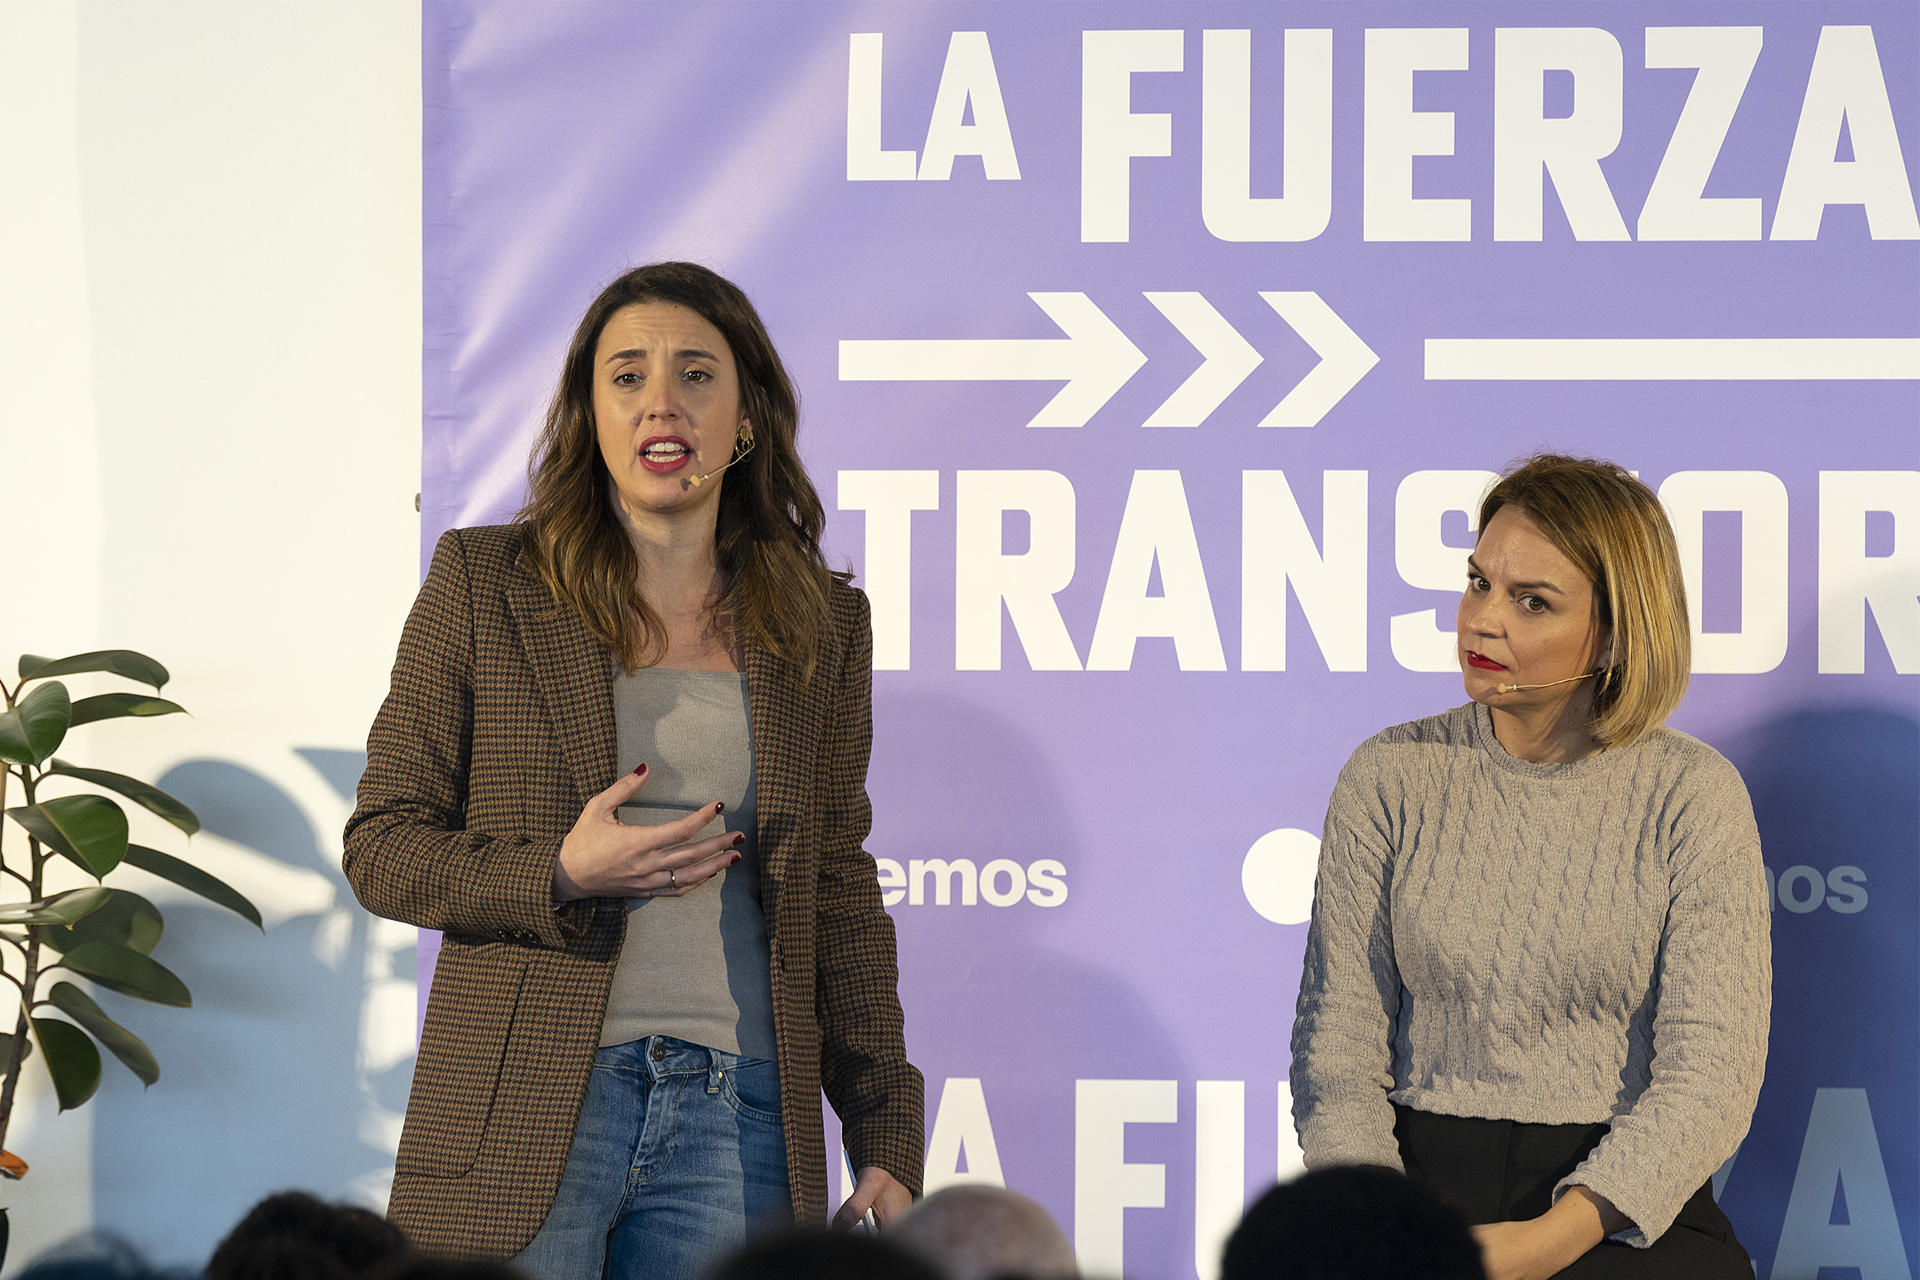 Foto de archivo de la candidata de Podemos a presidenta de Canarias, Noemí Santana (d), en un acto de su partido junto con la ministra de Igualdad, Irene Montero (i).EFE/ Adriel Perdomo